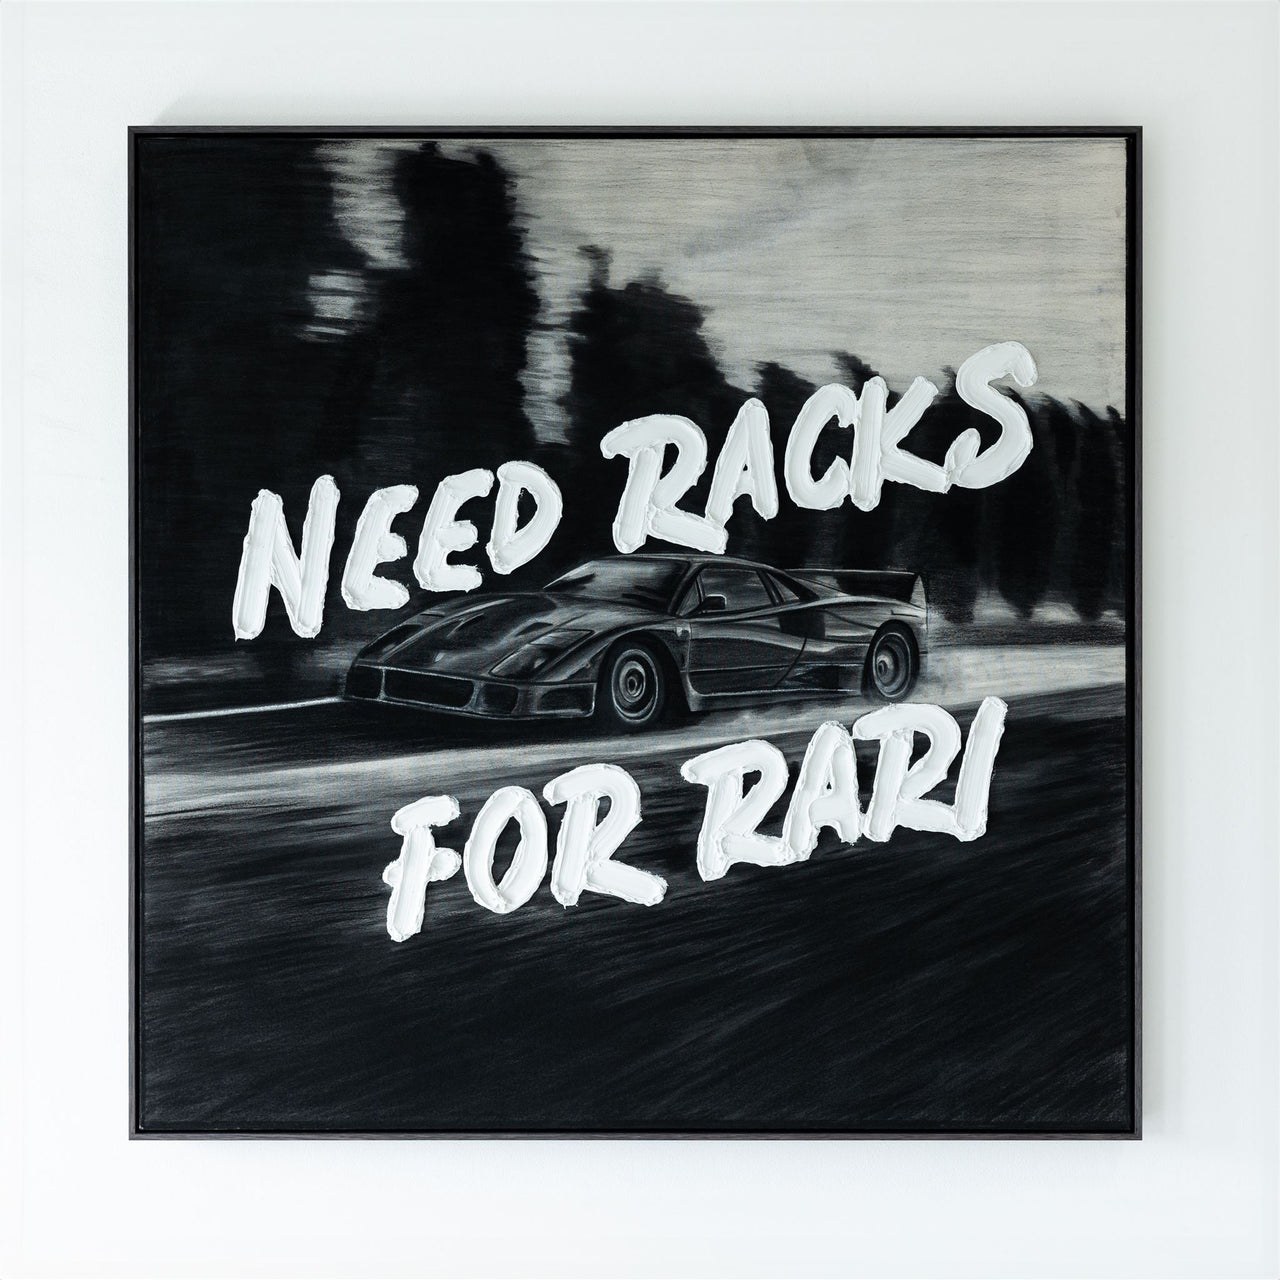 NEED RACKS FOR RARI